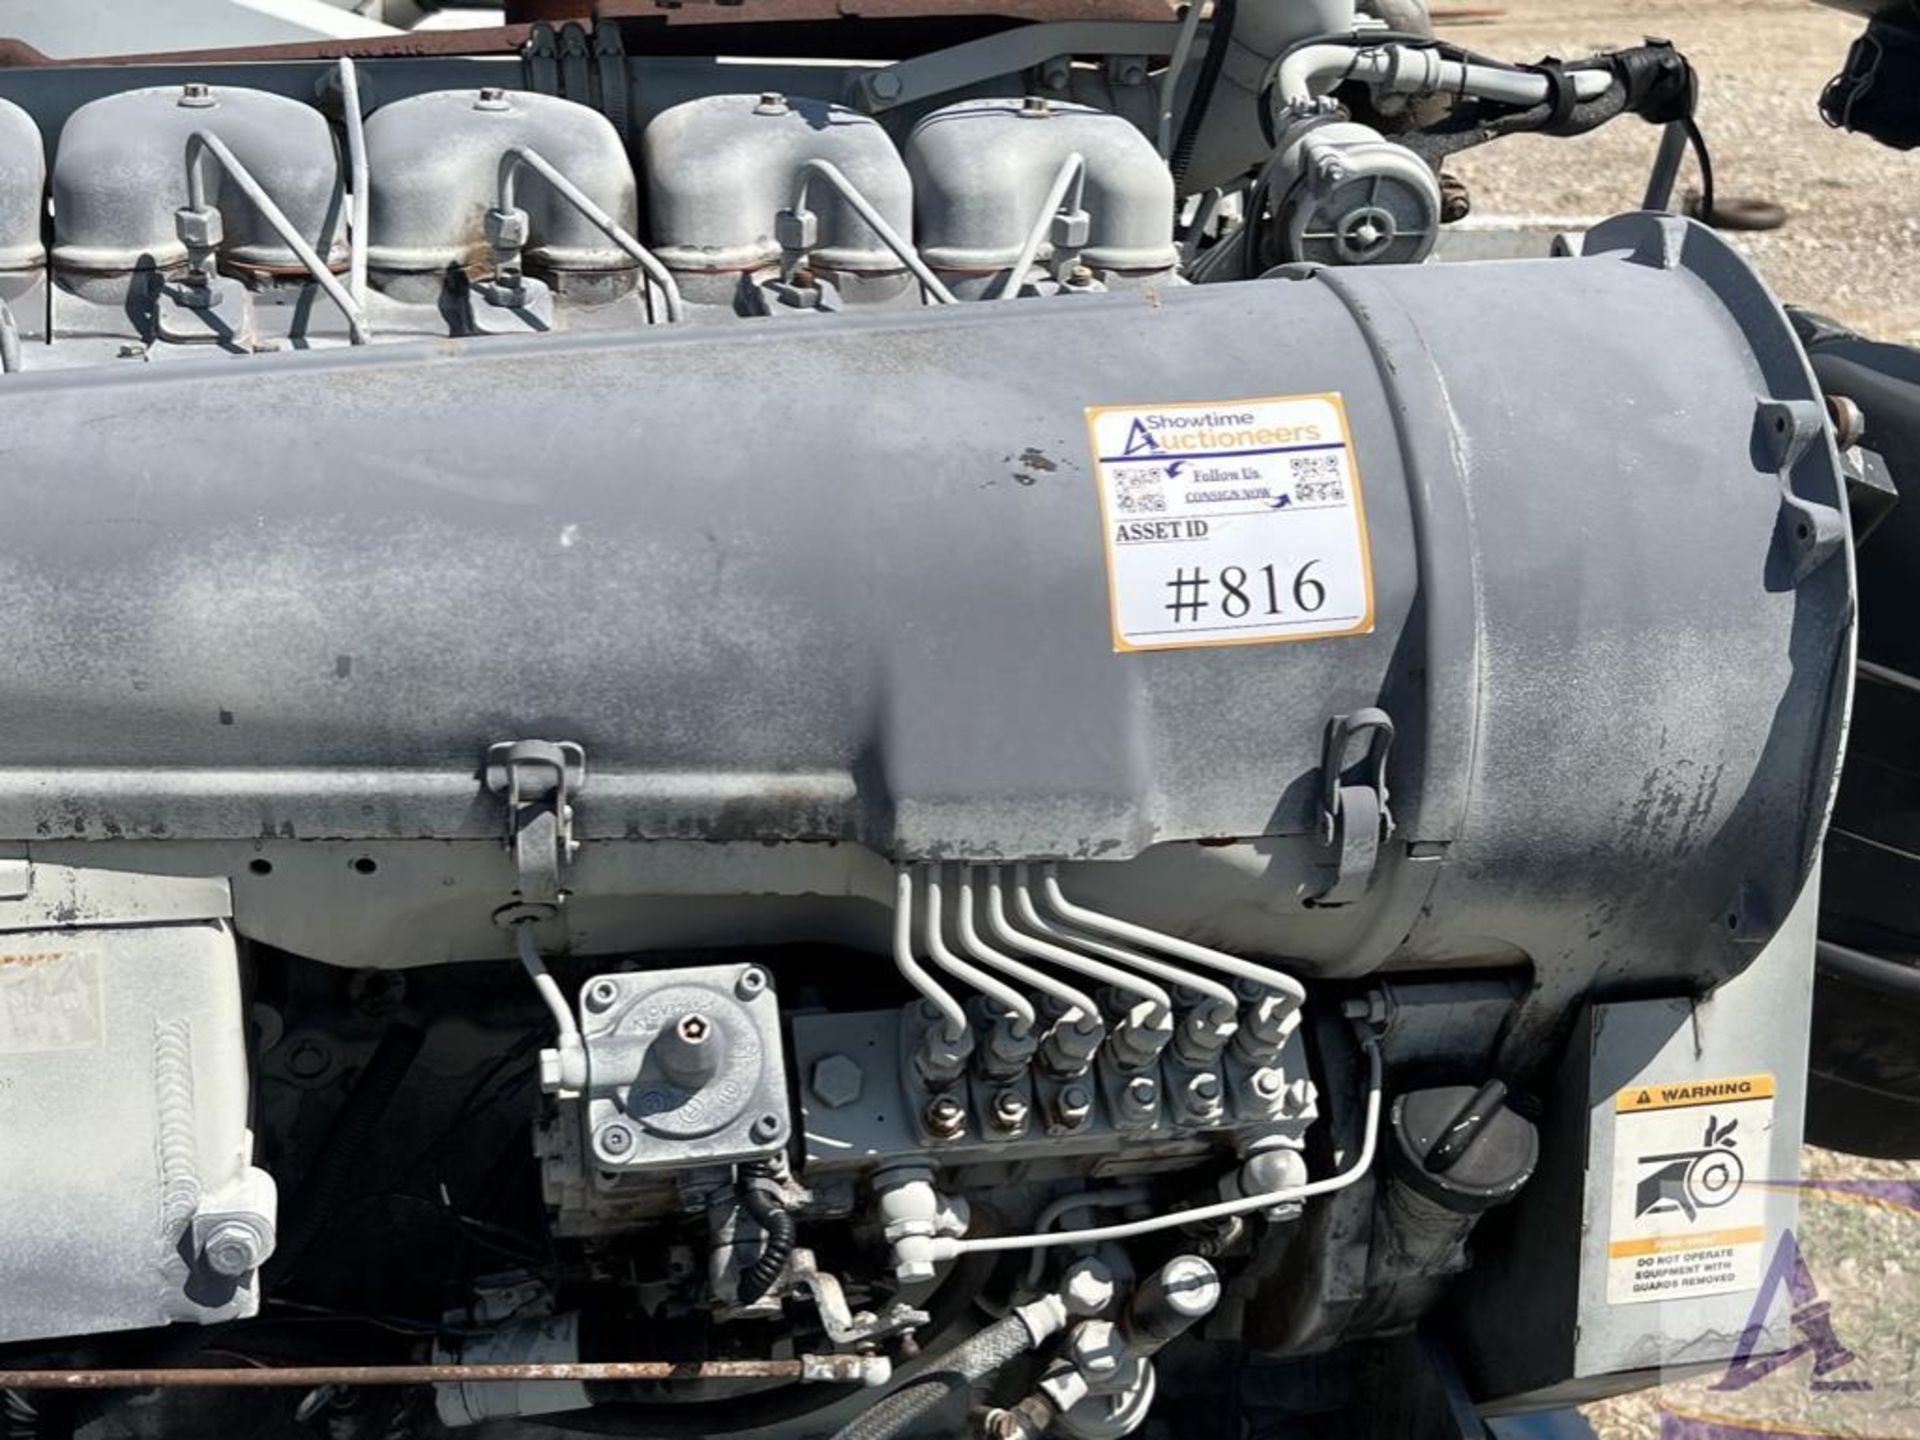 2013 Pioneer Water Transfer Pump, powered by Duetz 6-cyl. diesel engine - Image 19 of 19